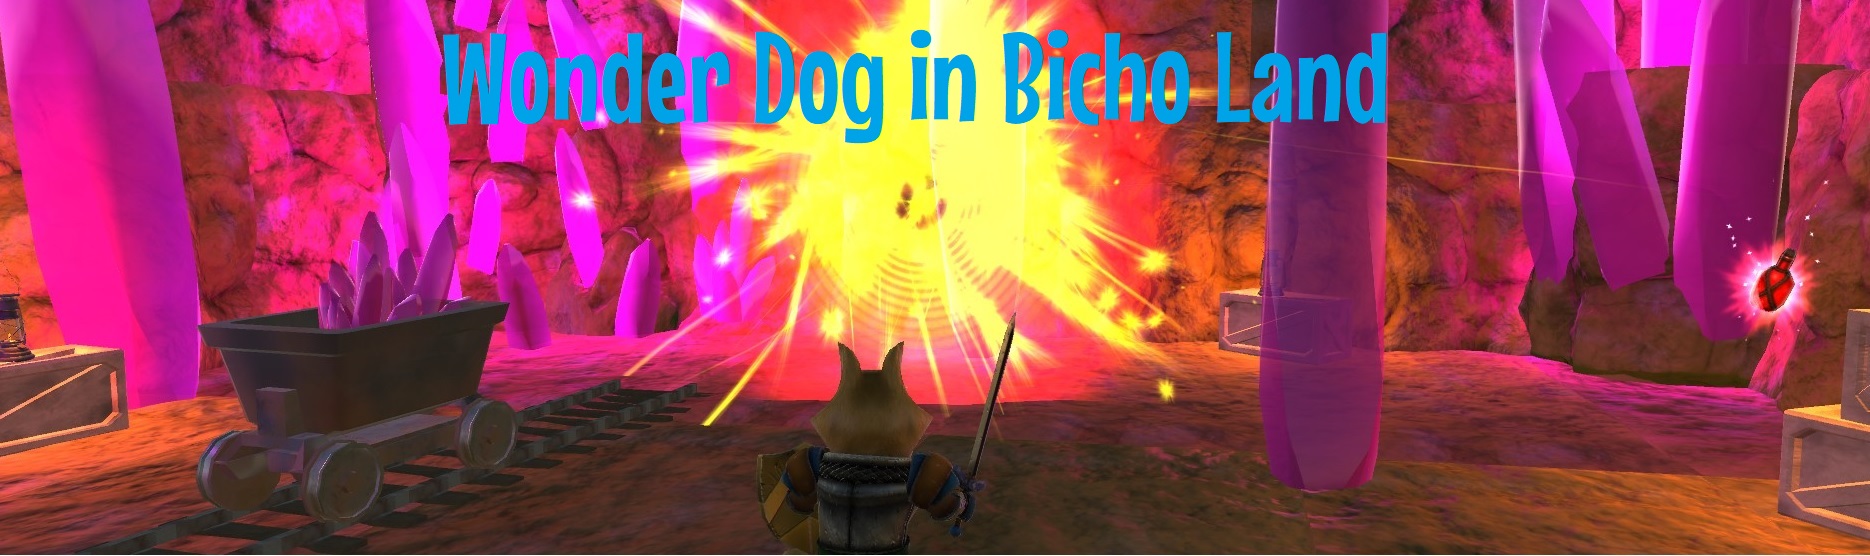 Wonder Dog in Bicho Land